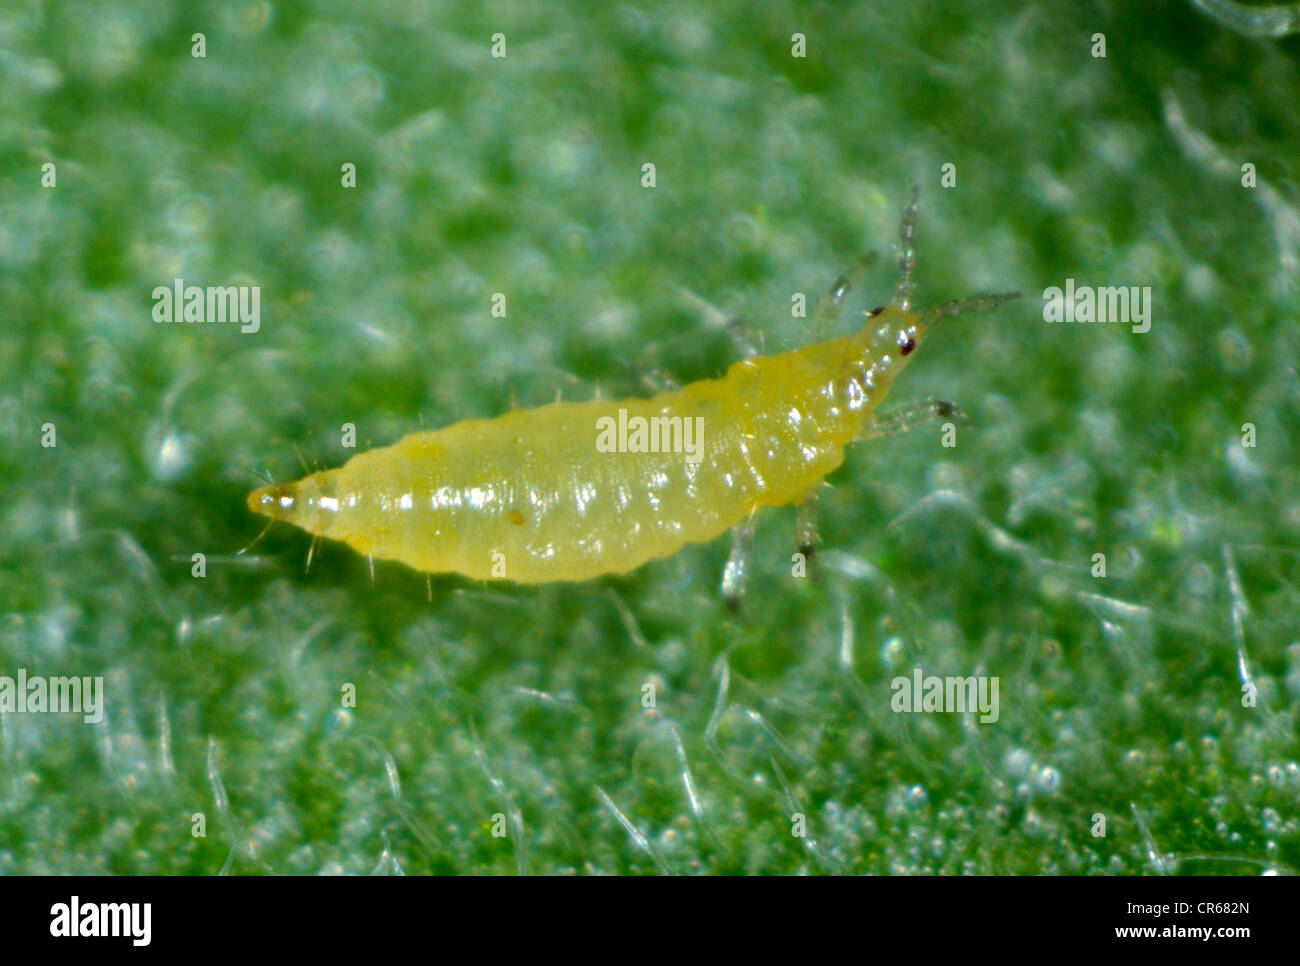 Western flower thrip (Frankliniella occidentalis) larva on a leaf Stock Photo